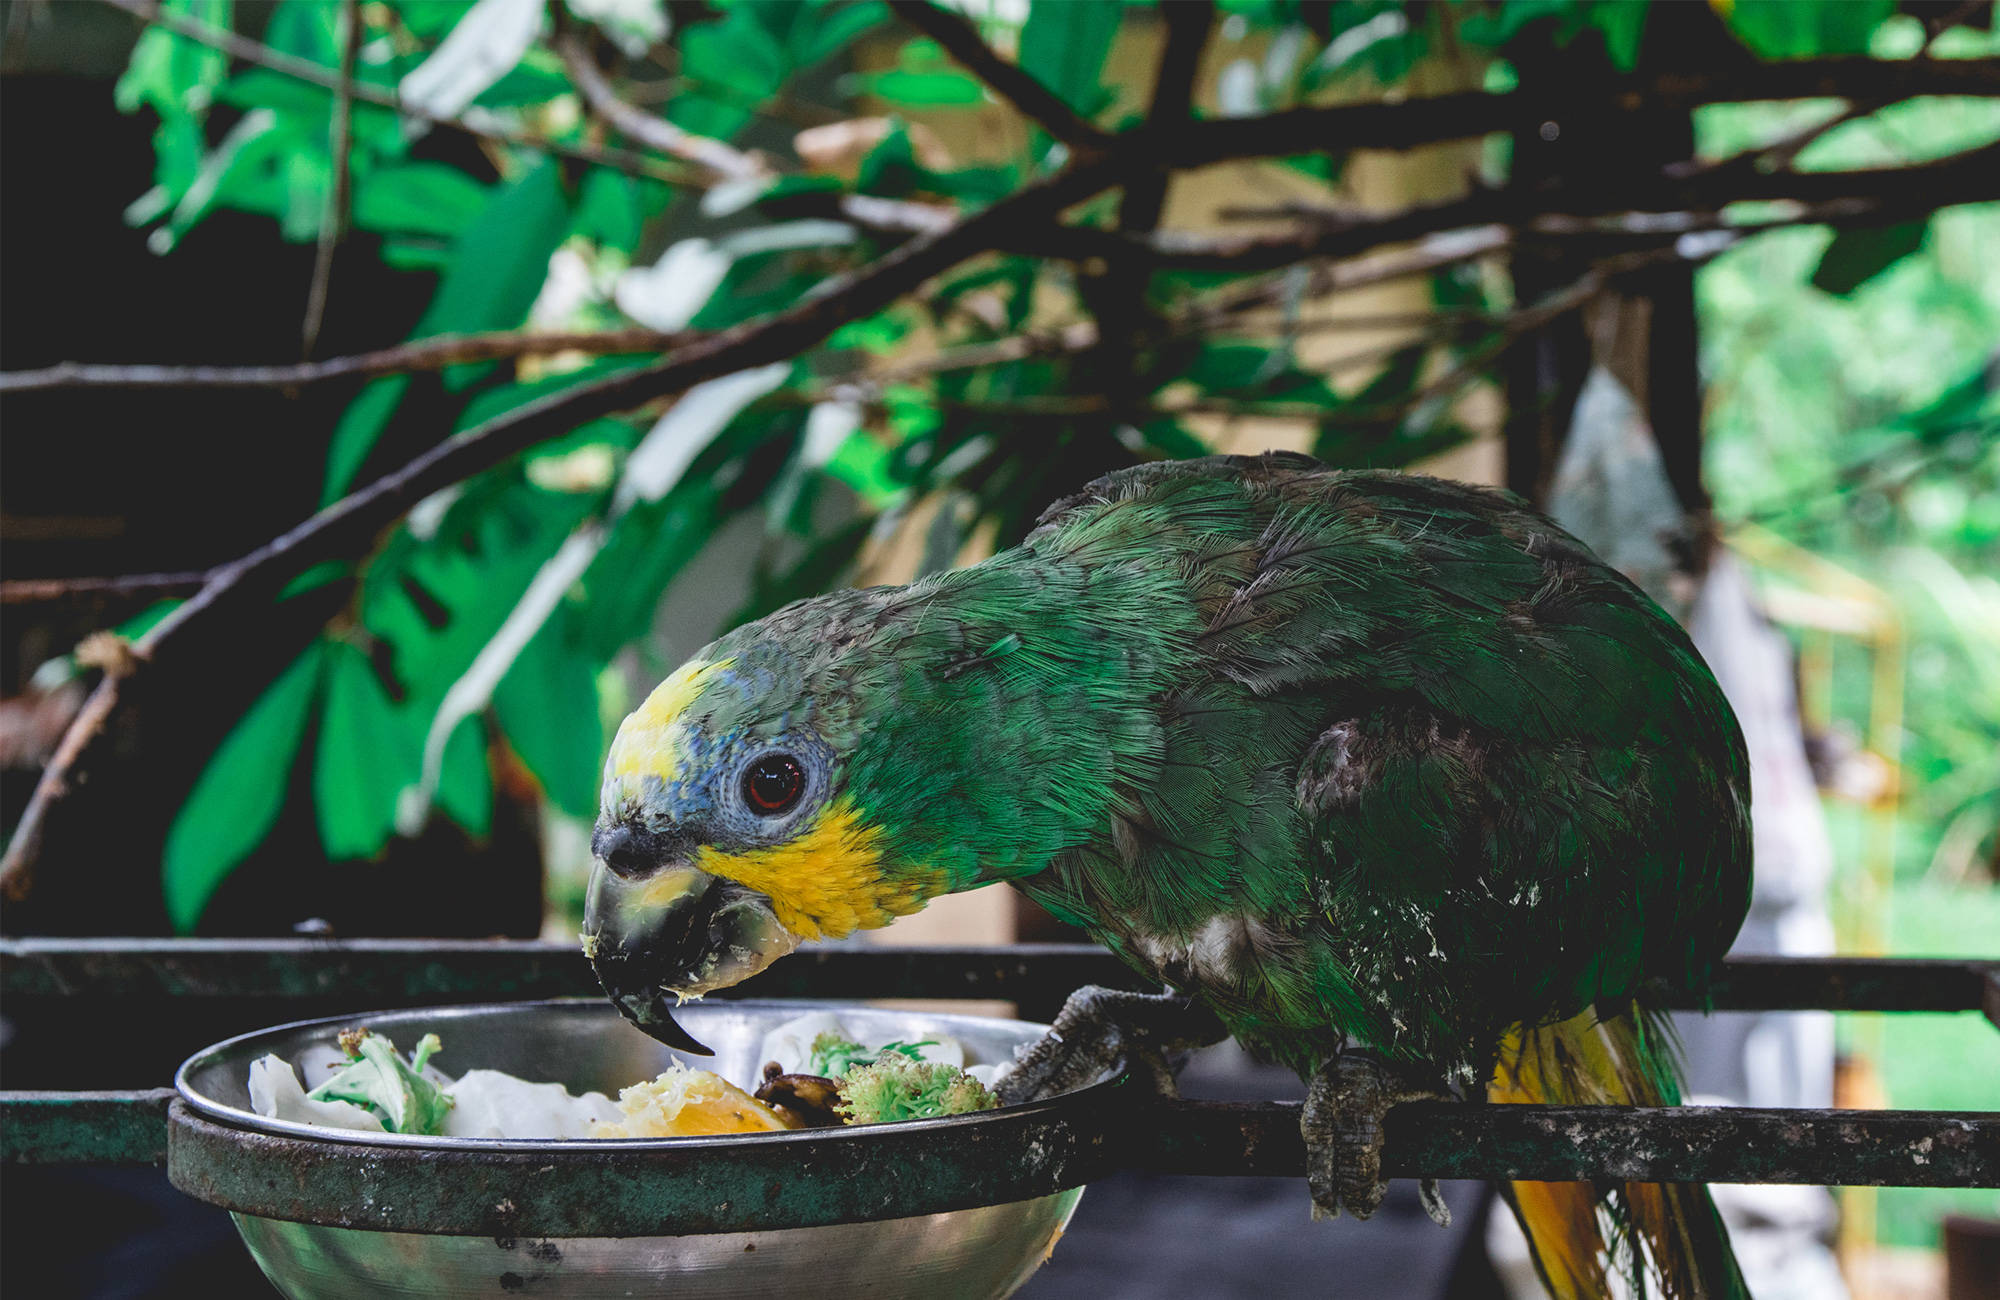 papegaai eet uit bakje | 3 (vrijwilligers)projecten in kleurrijk Ecuador | KILROY